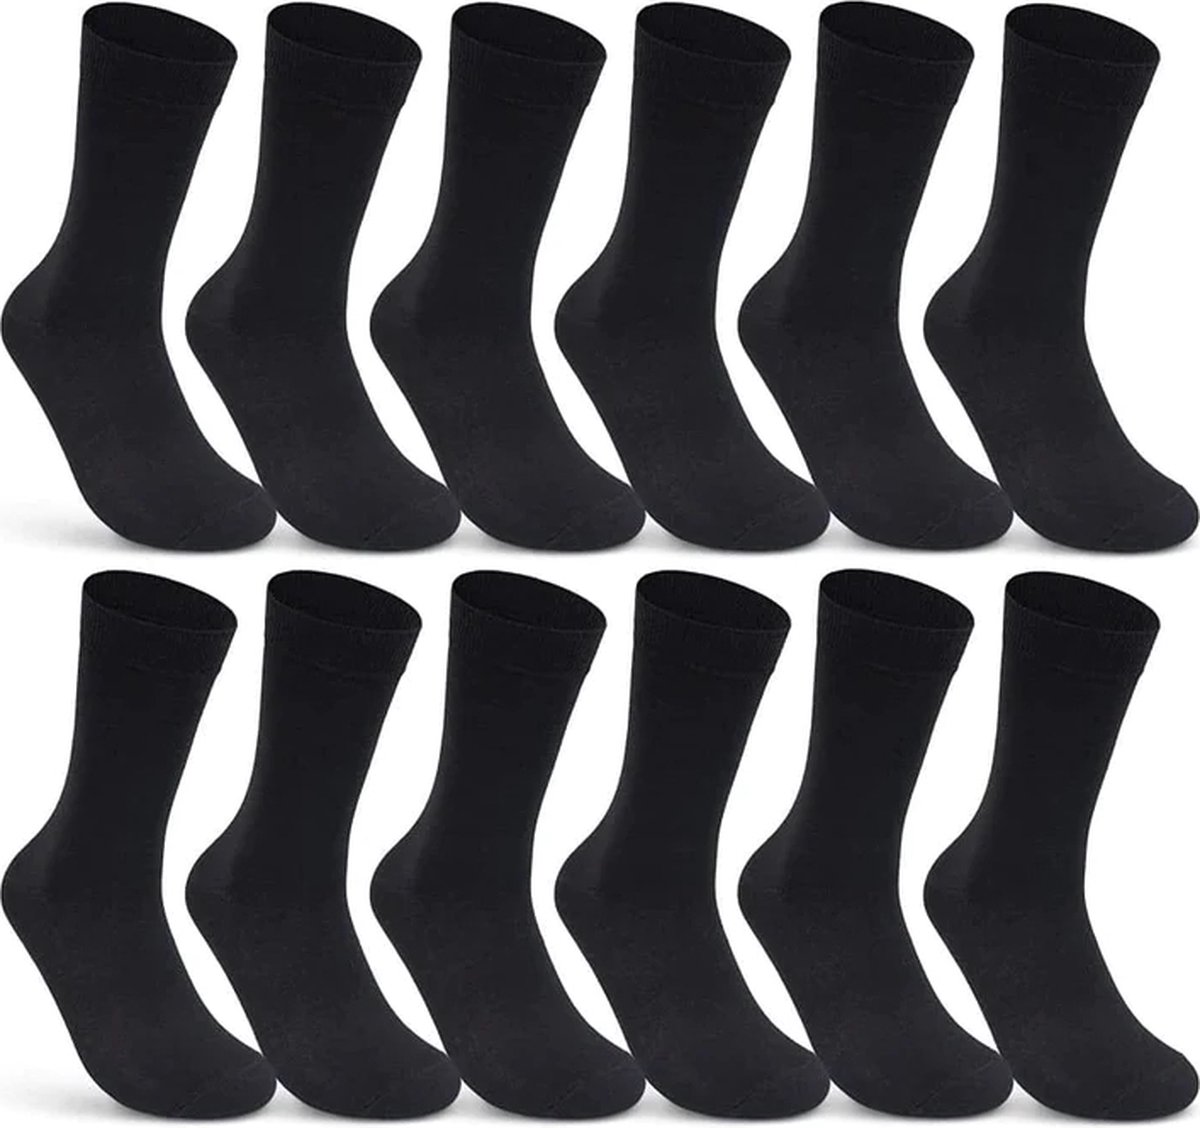 Naft katoenen sokken unisex - 9 paar - zwart -maat- 39-42